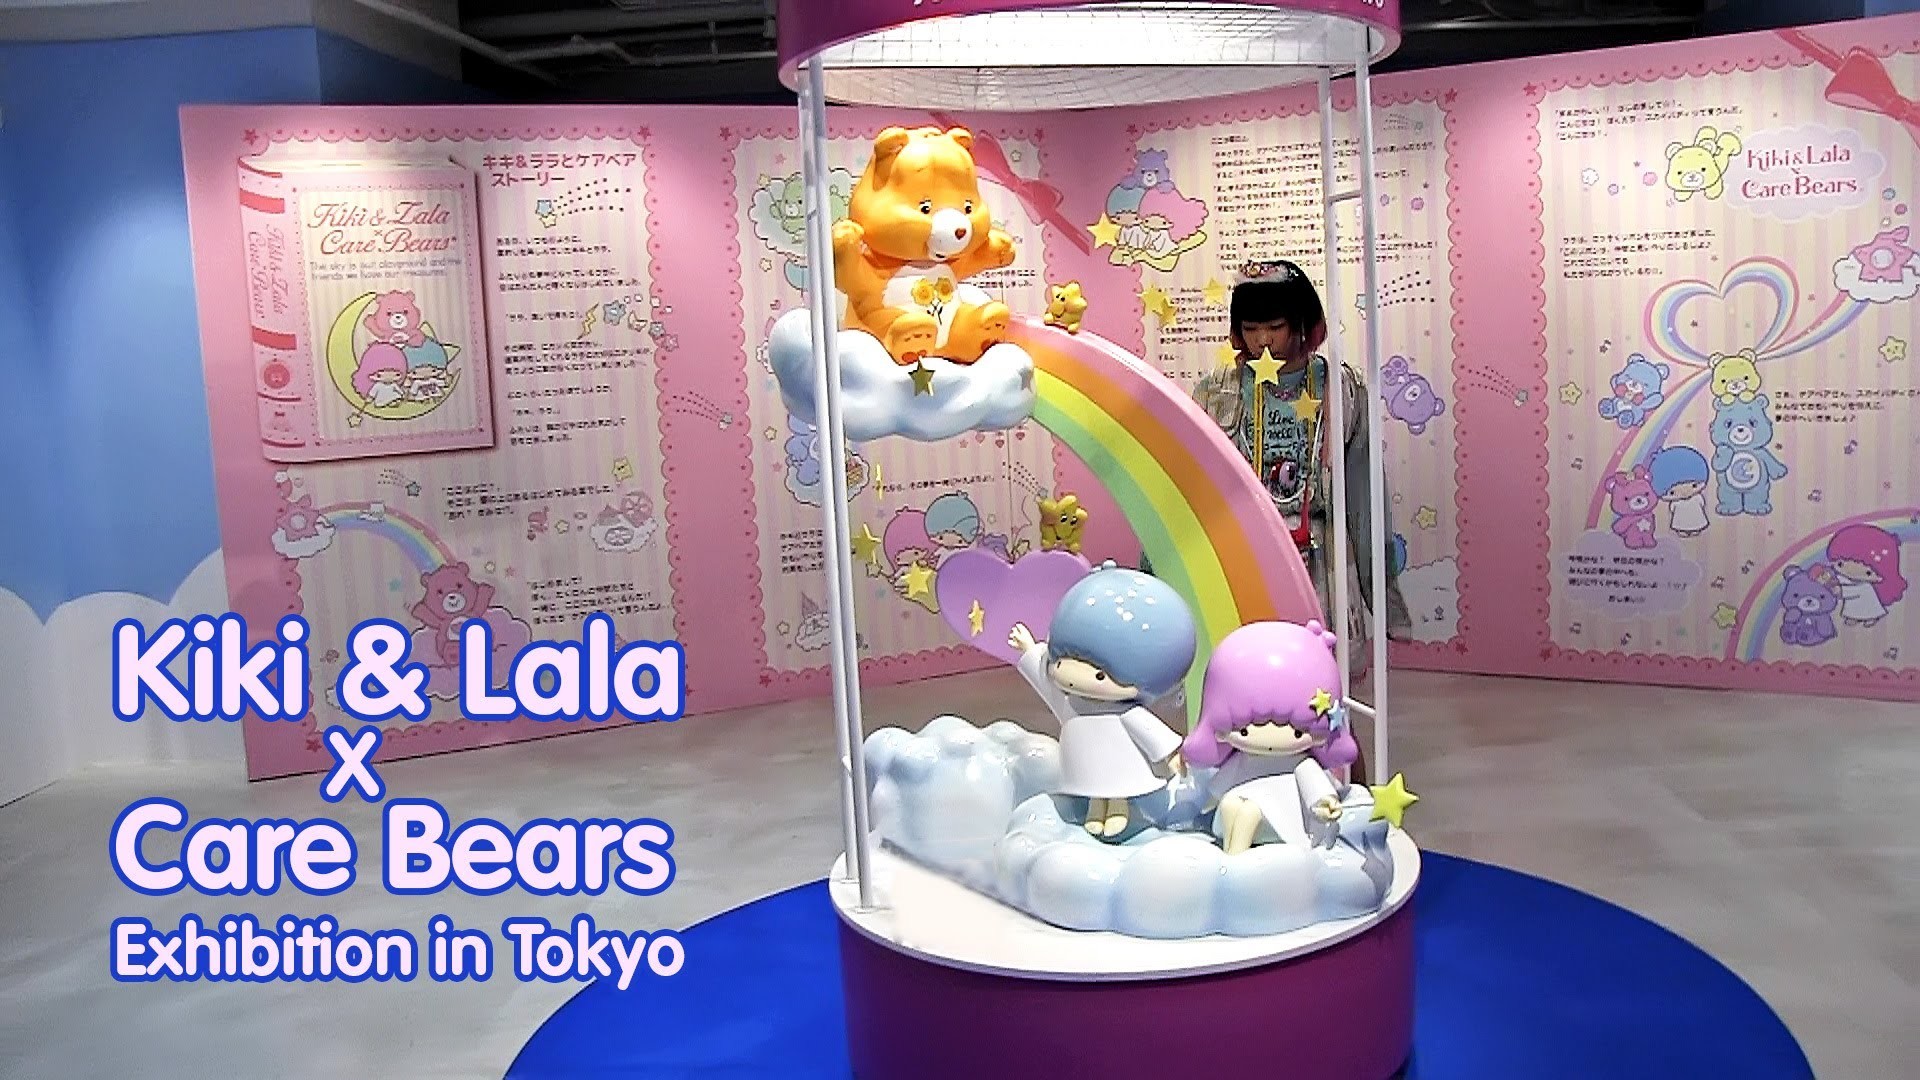 1920x1080 Kiki & Lala x Care Bears Exhibition Tokyo - ã­ã­&ã©ã© Ã ã±ã¢ãã¢ å± - YouTube